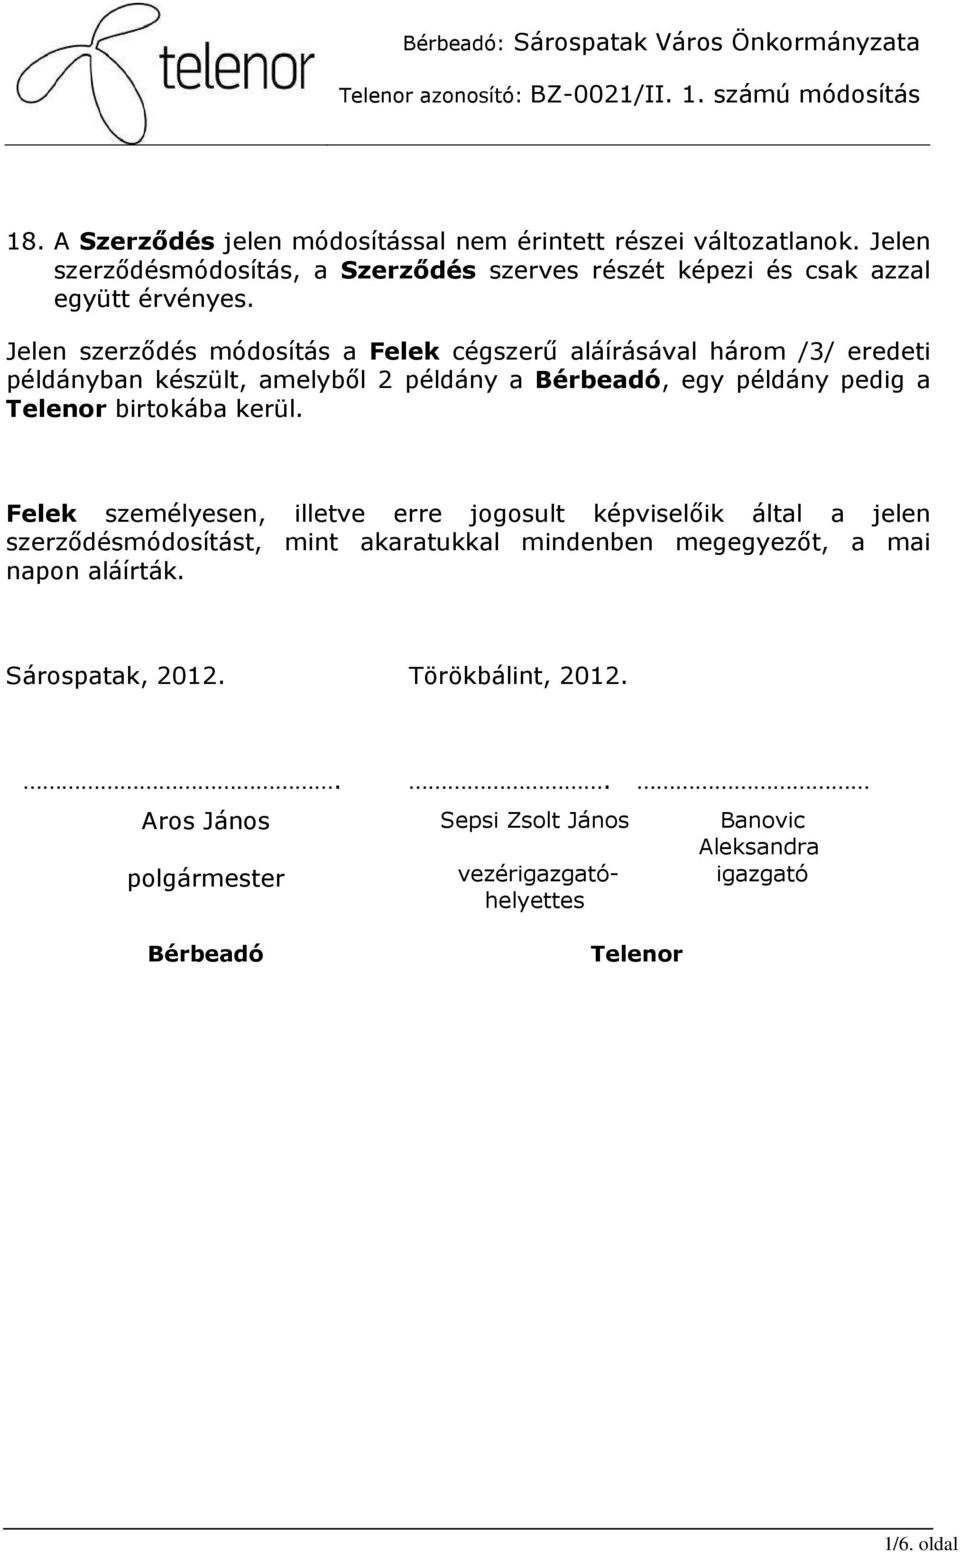 Jelen szerzıdés módosítás a Felek cégszerő aláírásával három /3/ eredeti példányban készült, amelybıl 2 példány a Bérbeadó, egy példány pedig a Telenor birtokába kerül.